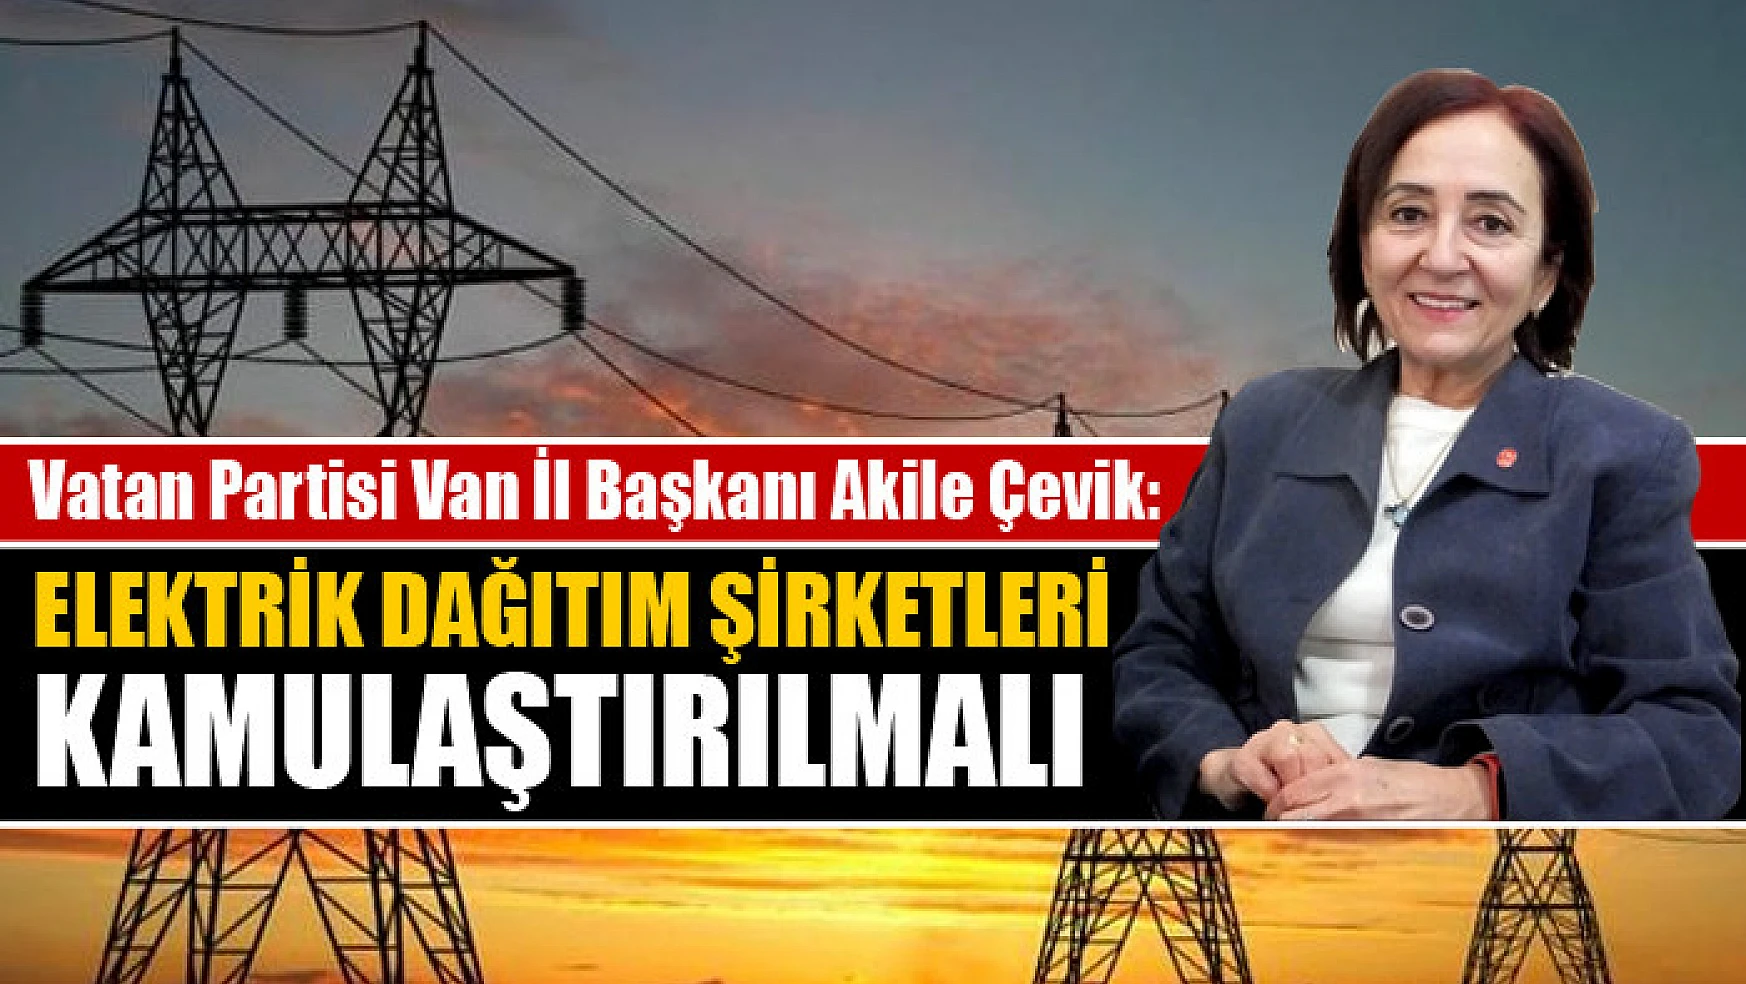 Vatan Partisi Van İl Başkanı Akile Çevik Elektrik dağıtım şirketleri kamulaştırılmalı